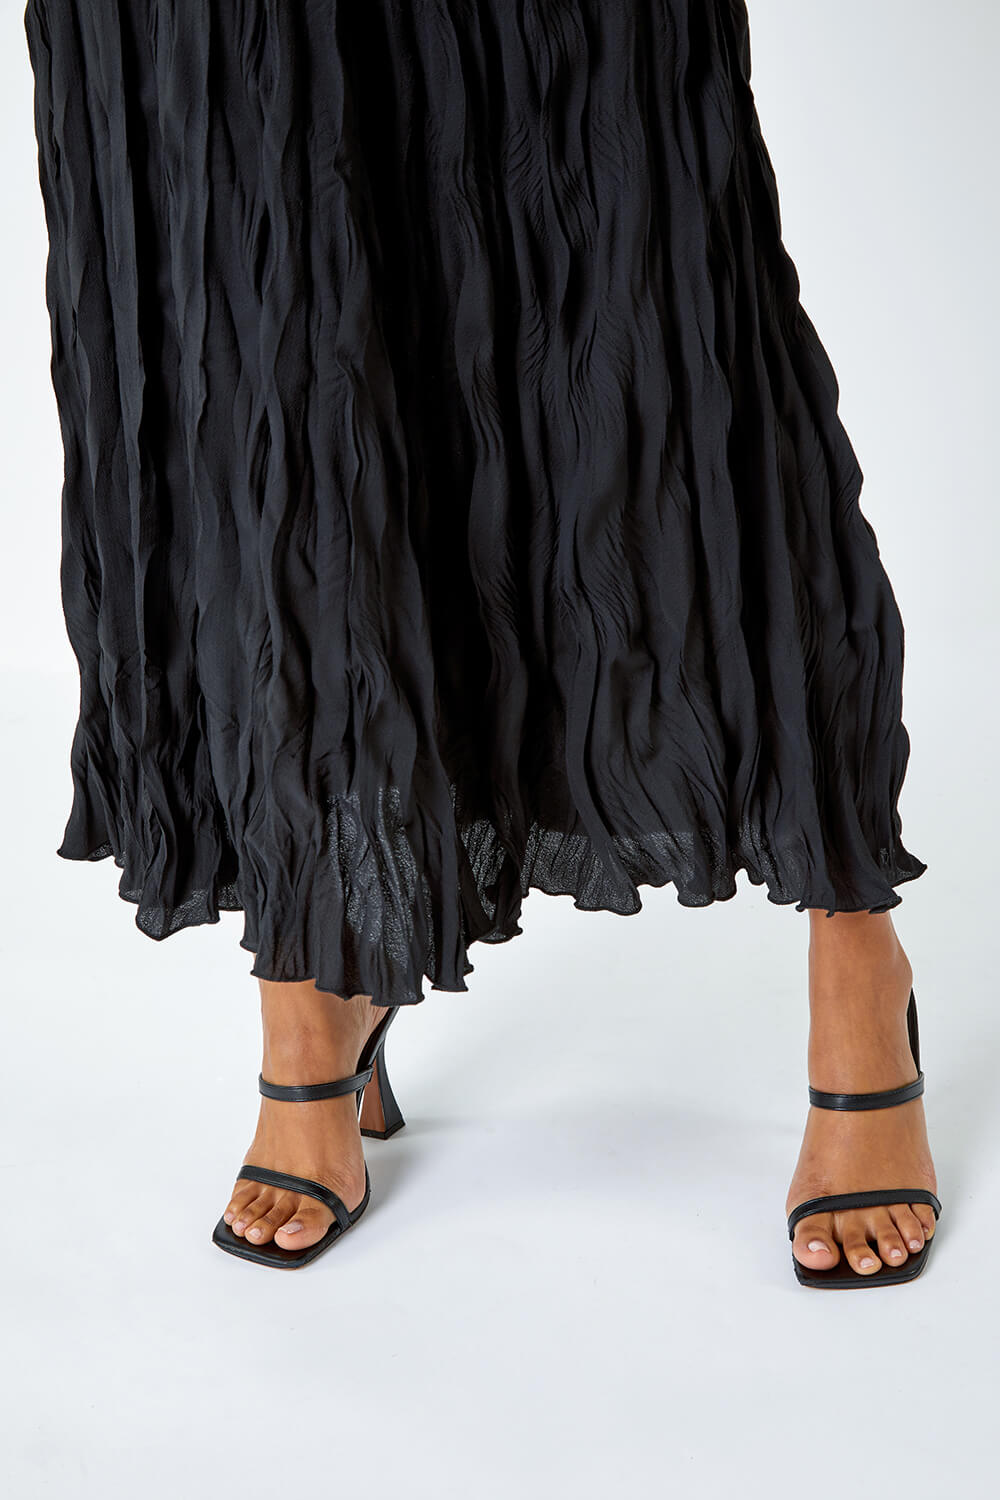 Black Textured Crinkle Midi Skirt, Image 4 of 5